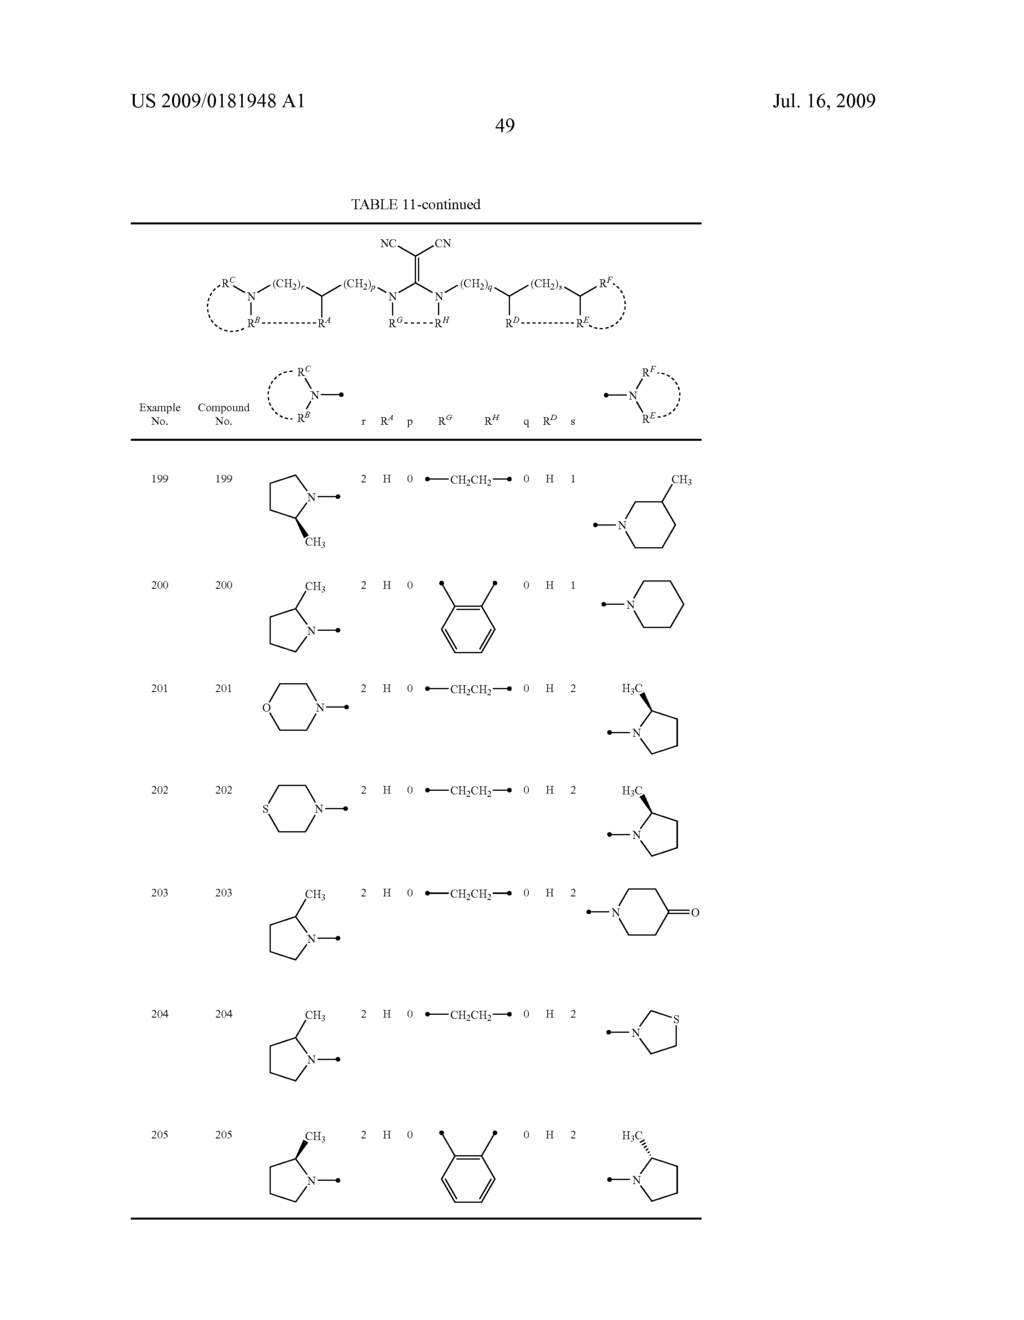 DIAMINE DERIVATIVE - diagram, schematic, and image 50